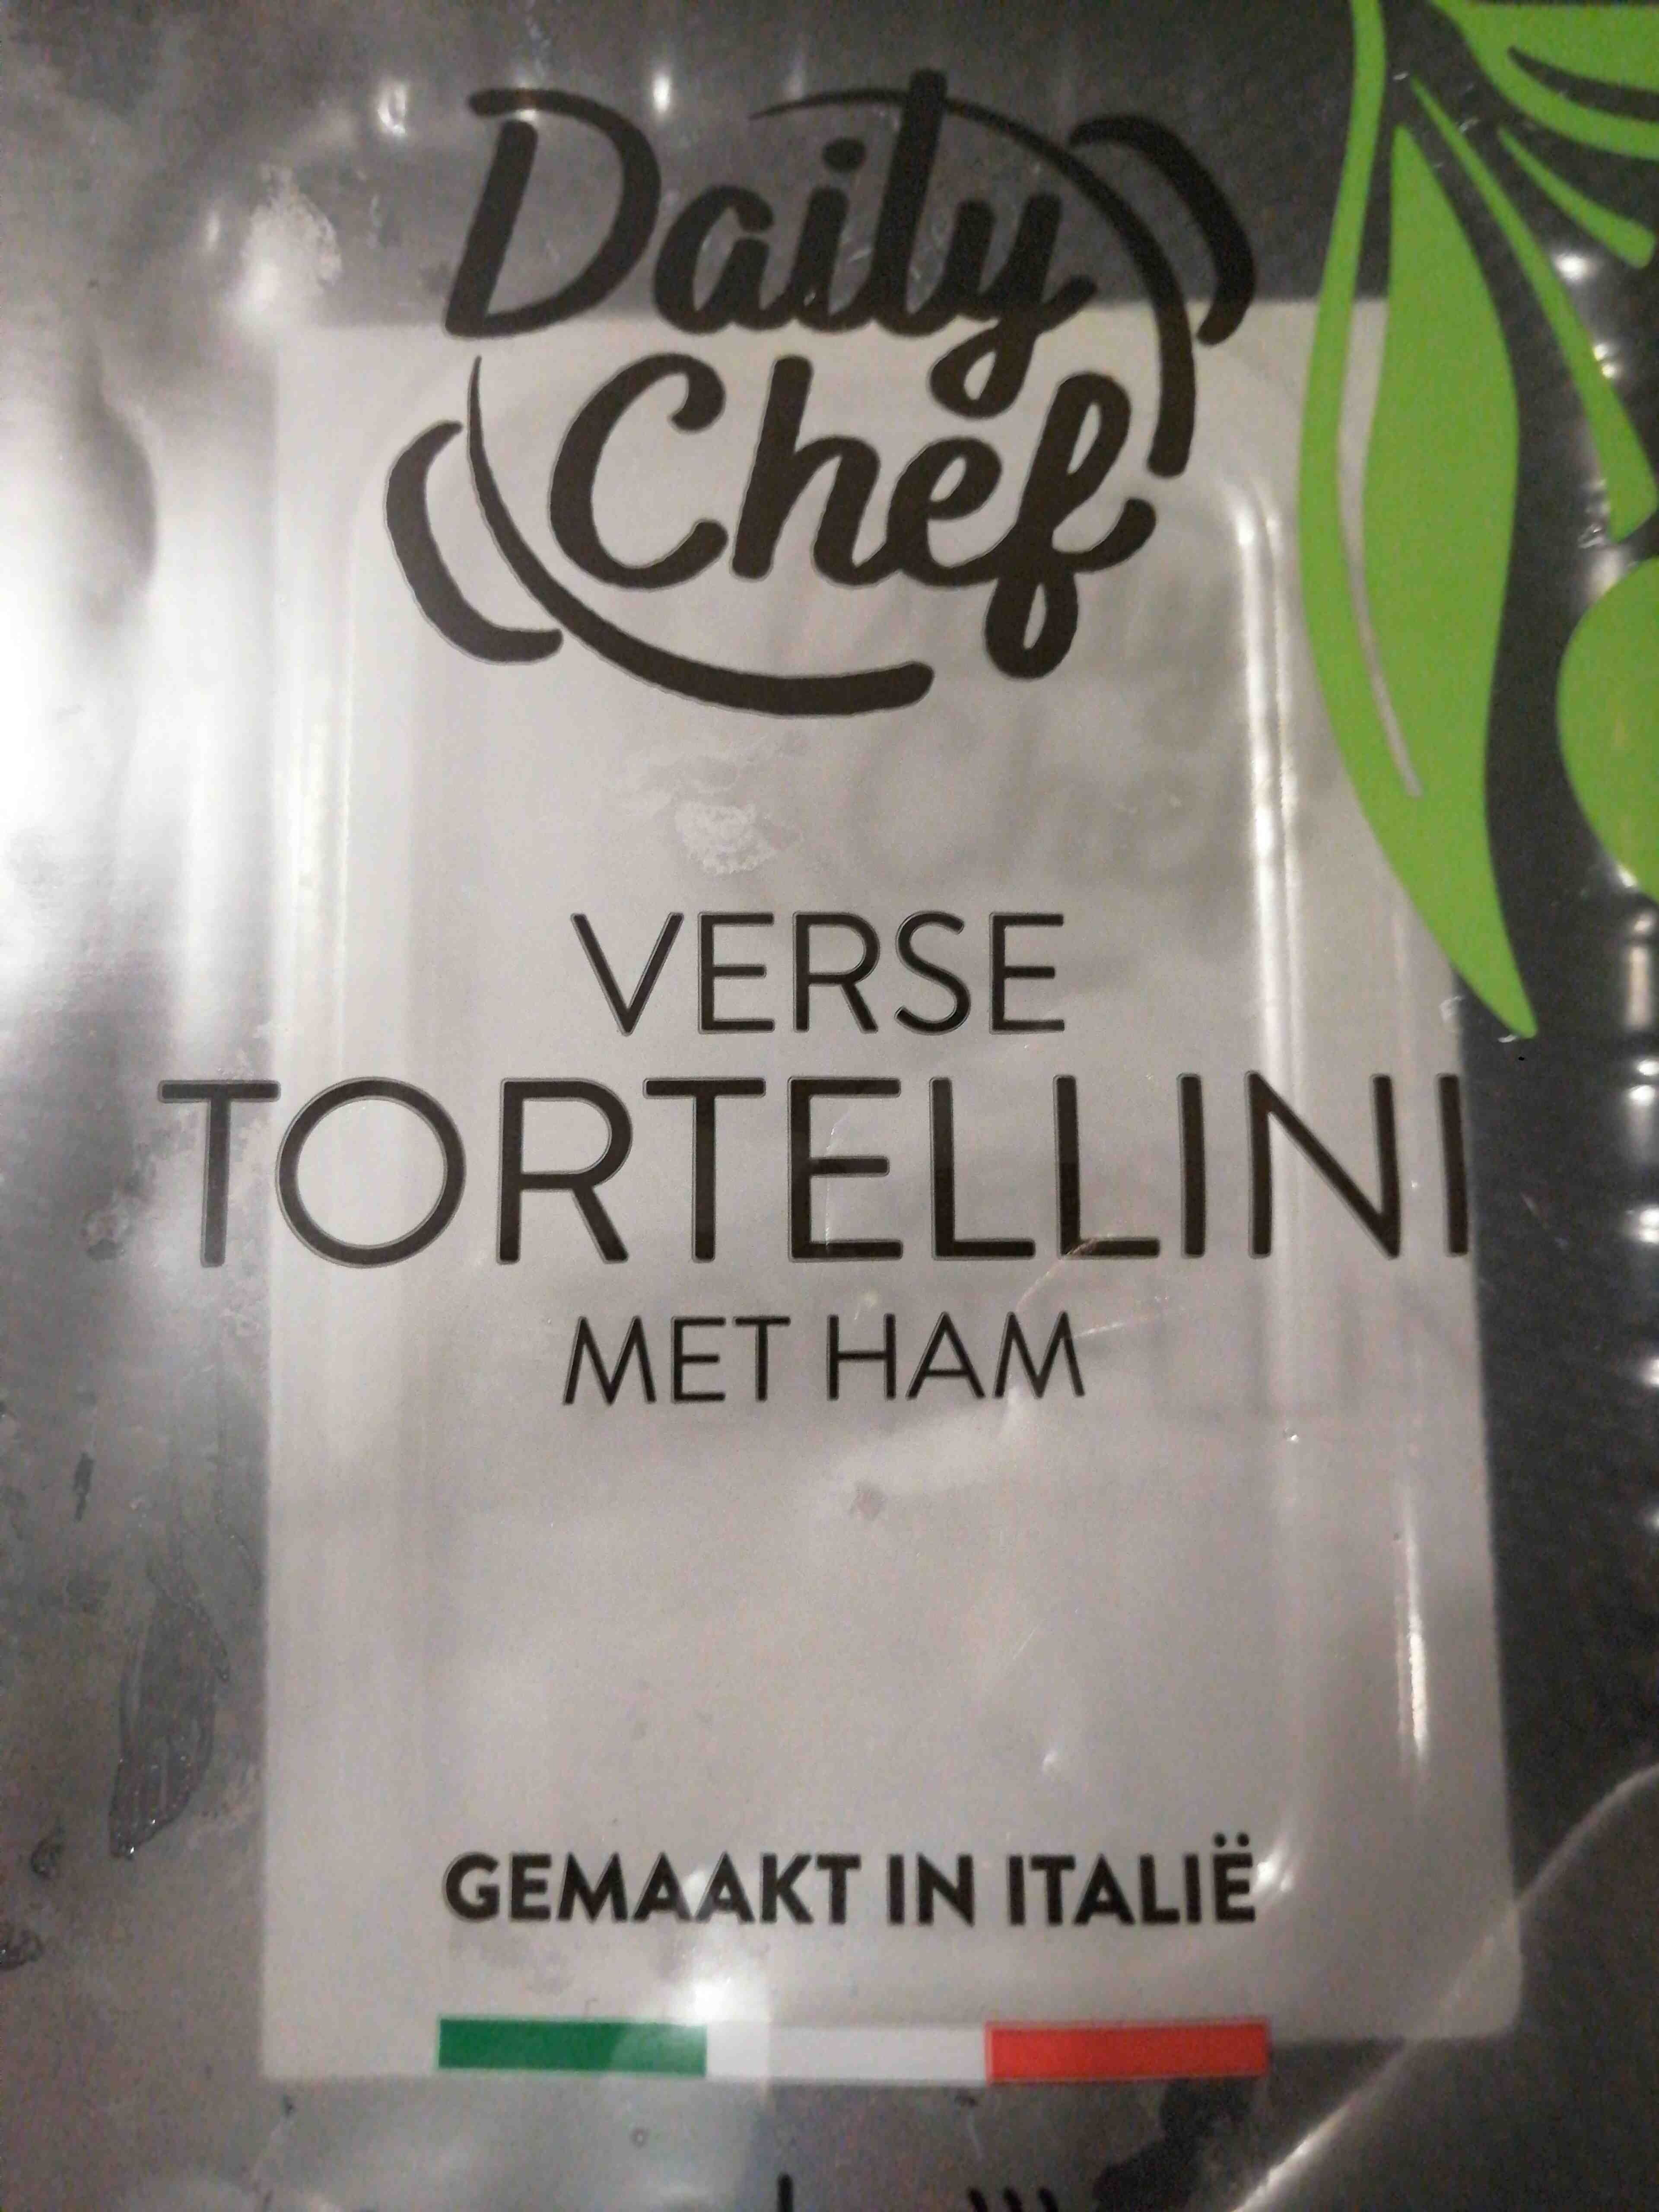 Verse tortellini met ham - Product